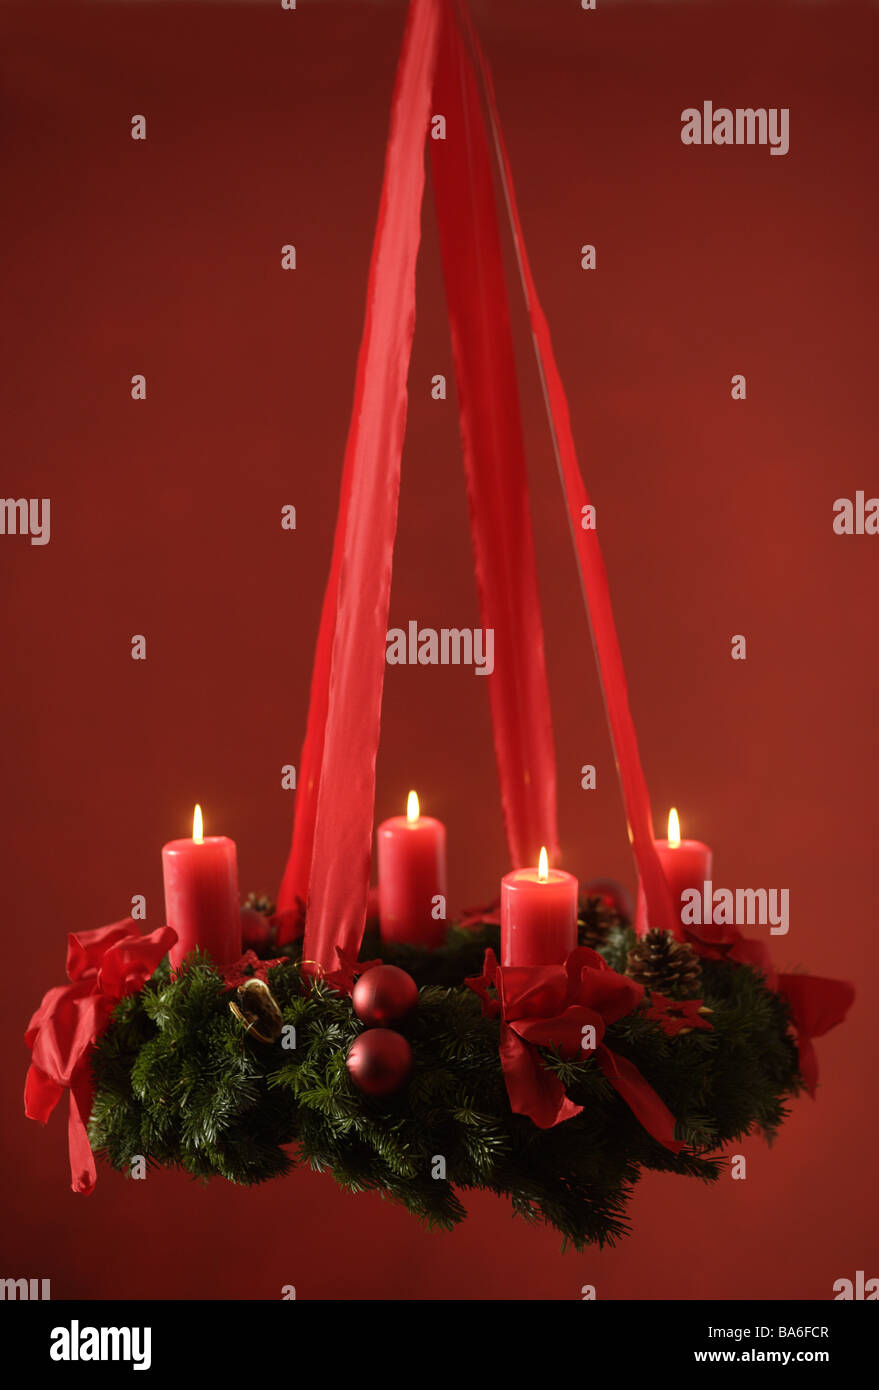 Adventskranz hängt Kerzen vier Serien stechen Weihnachtstradition rot vor Weihnachten Advent Weihnachten-ähnliche Stimmung Schweigen Stille Stockfoto